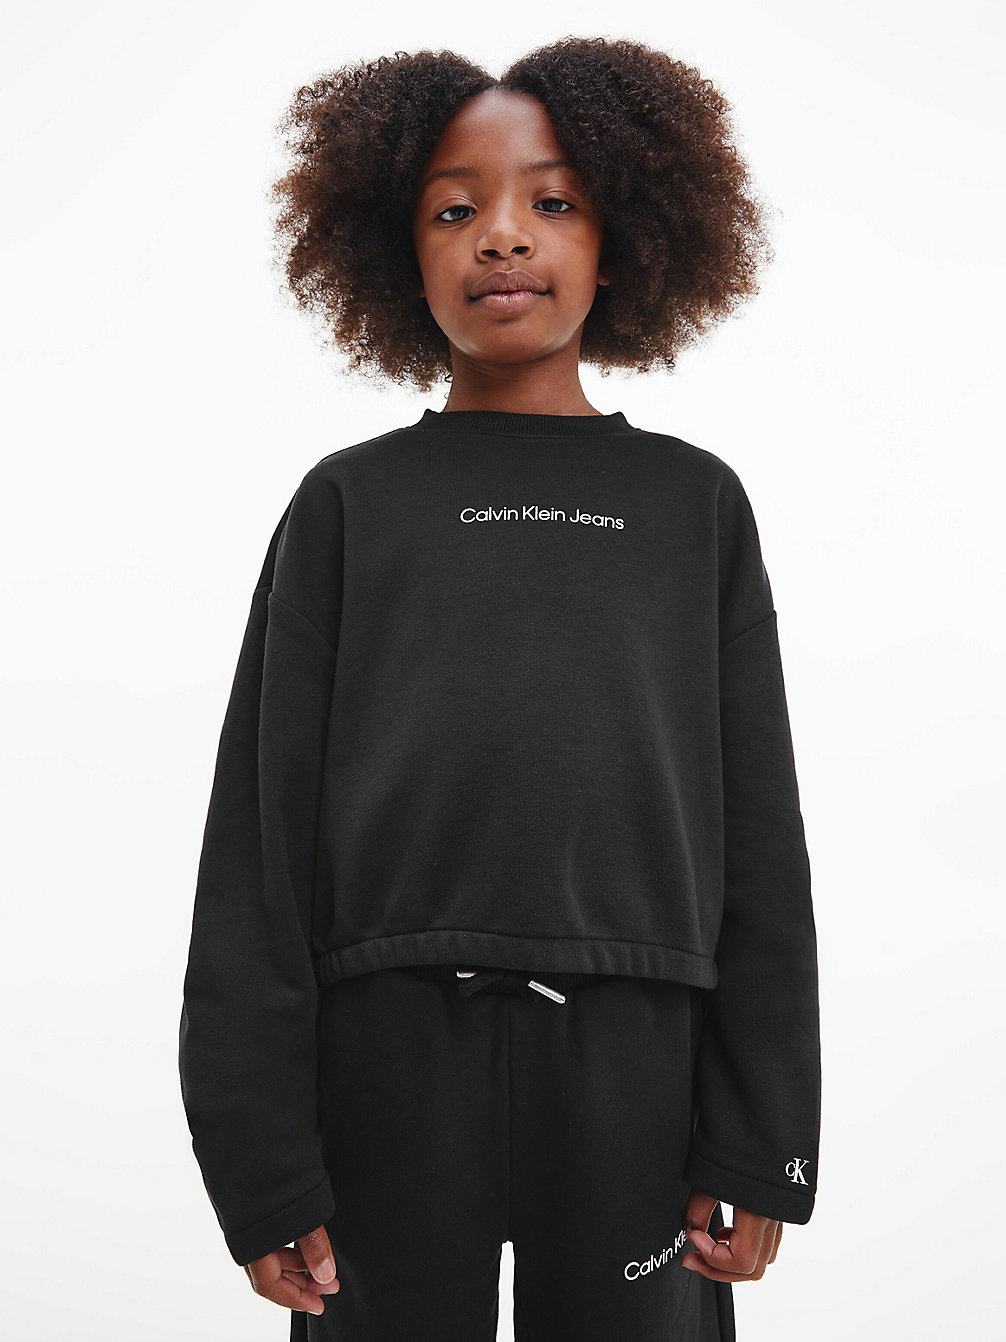 CK BLACK > Trainingspak > undefined girls - Calvin Klein